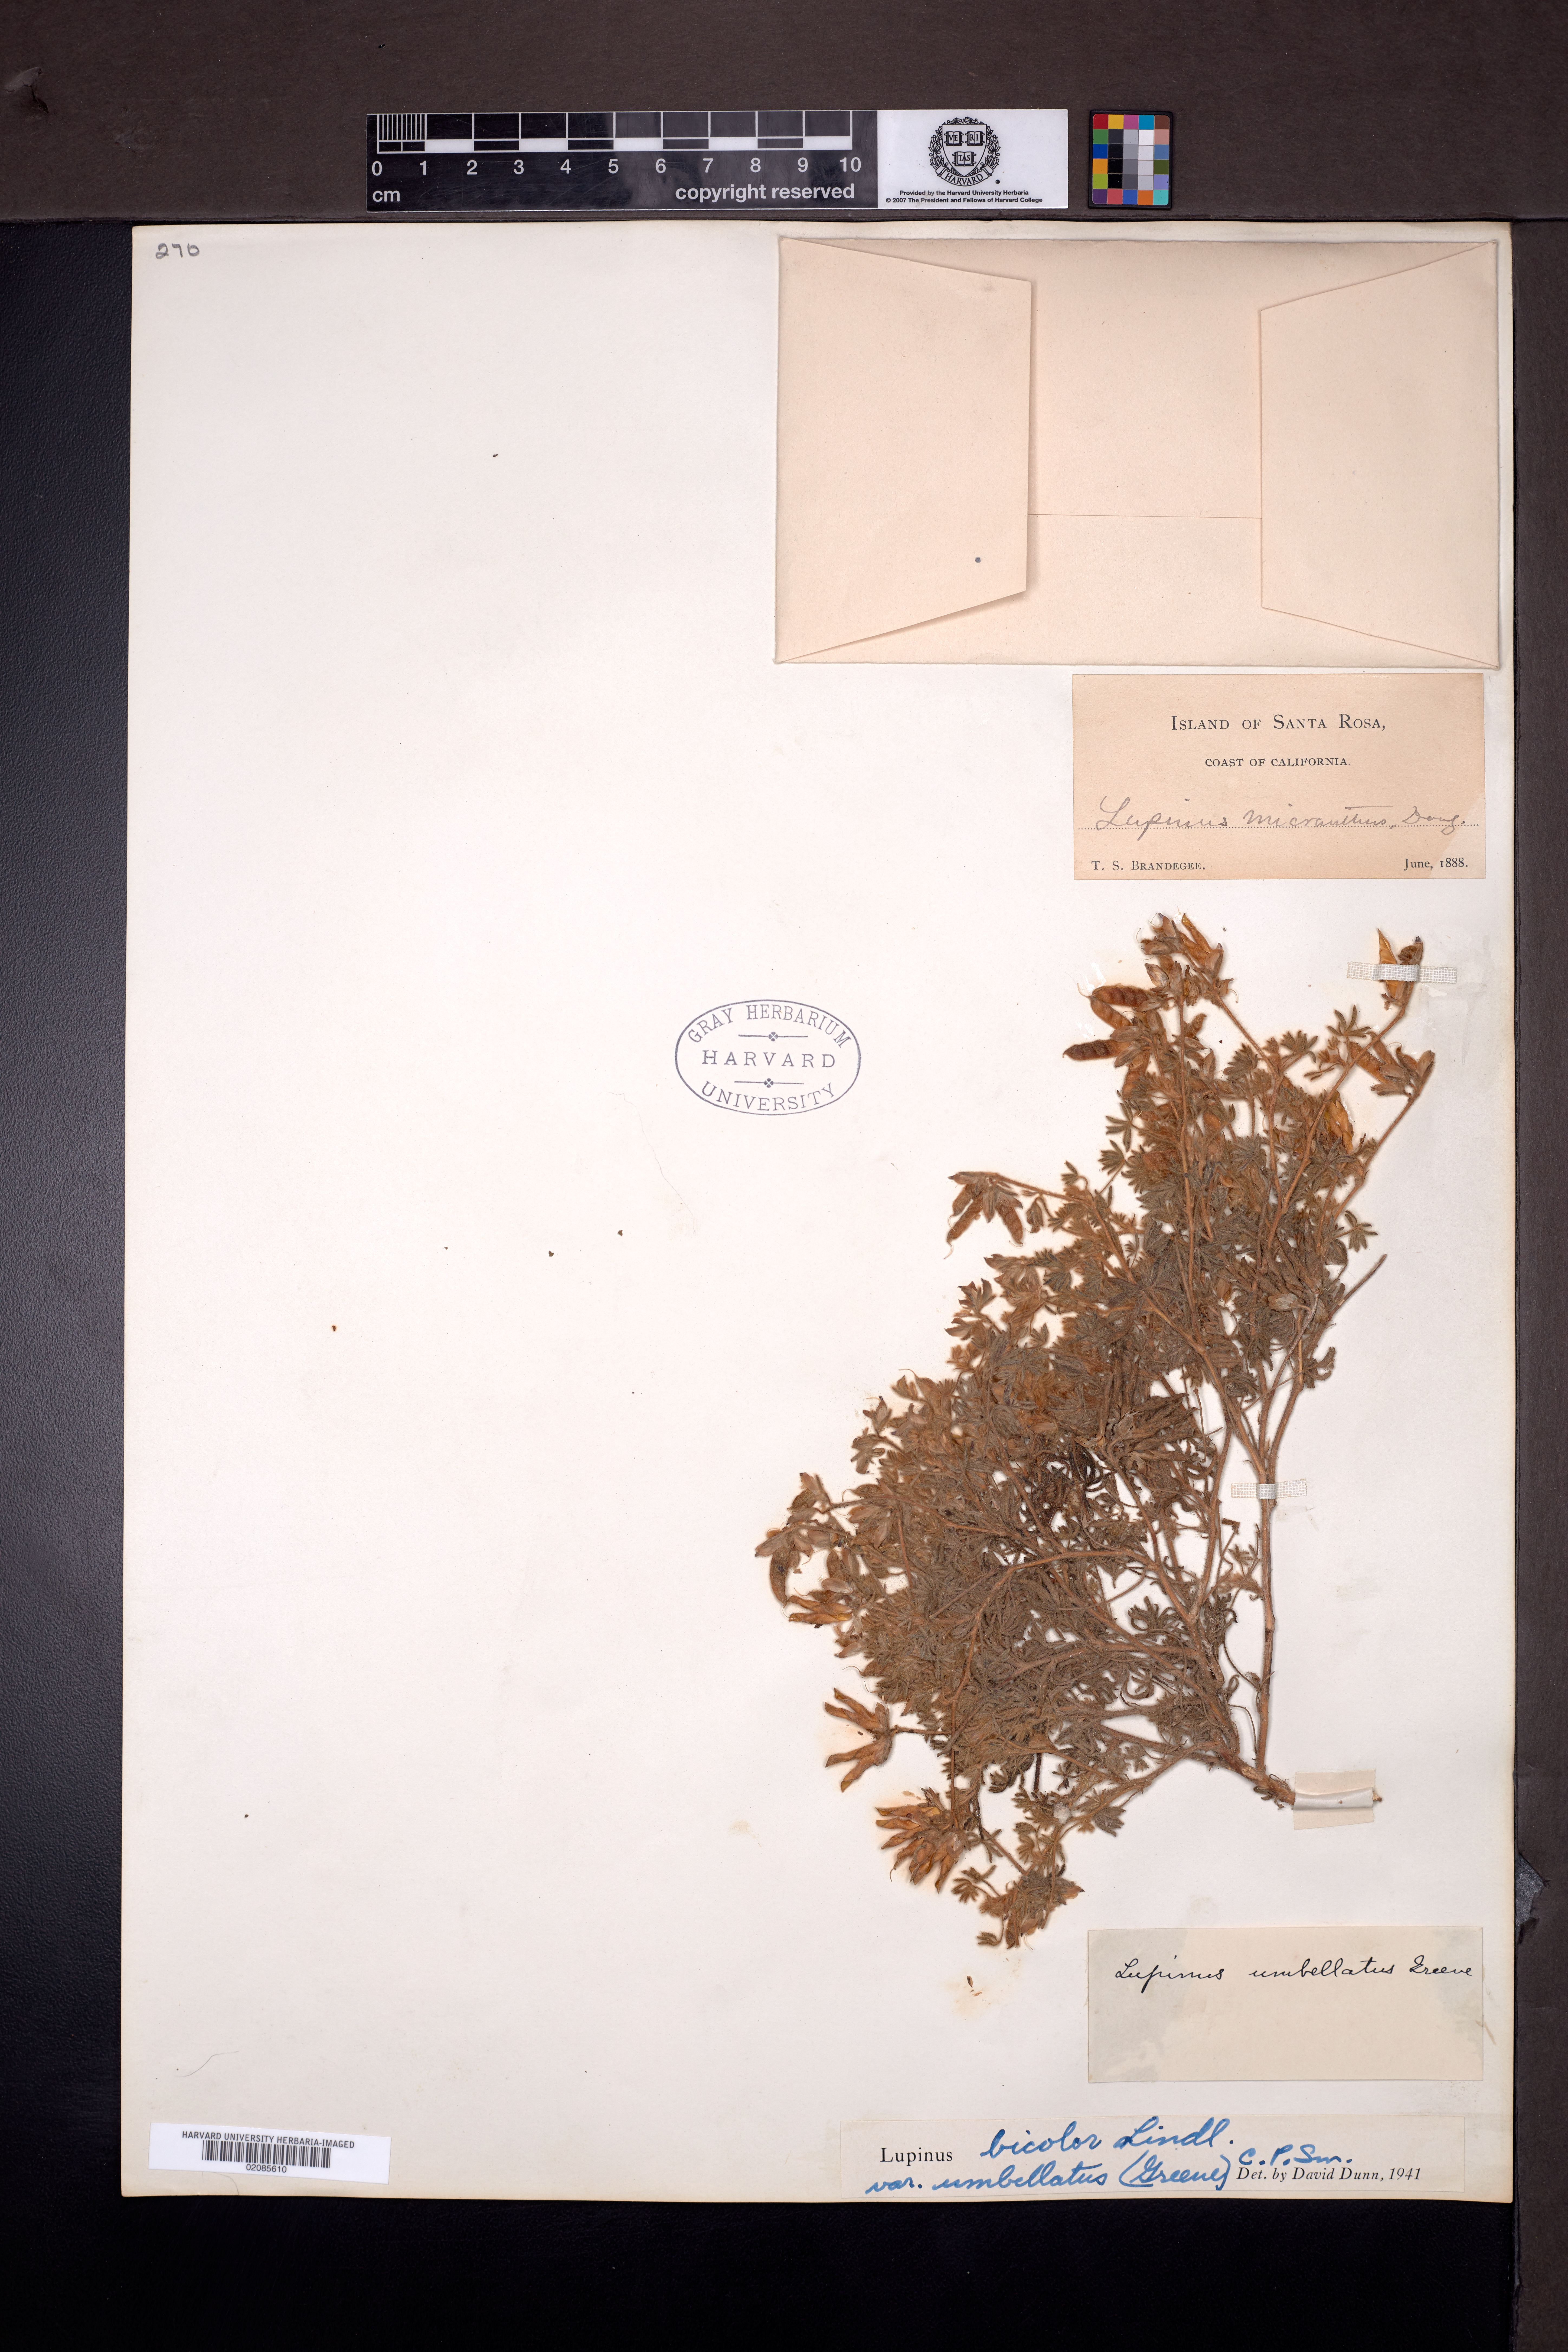 Lupinus bicolor subsp. umbellatus image